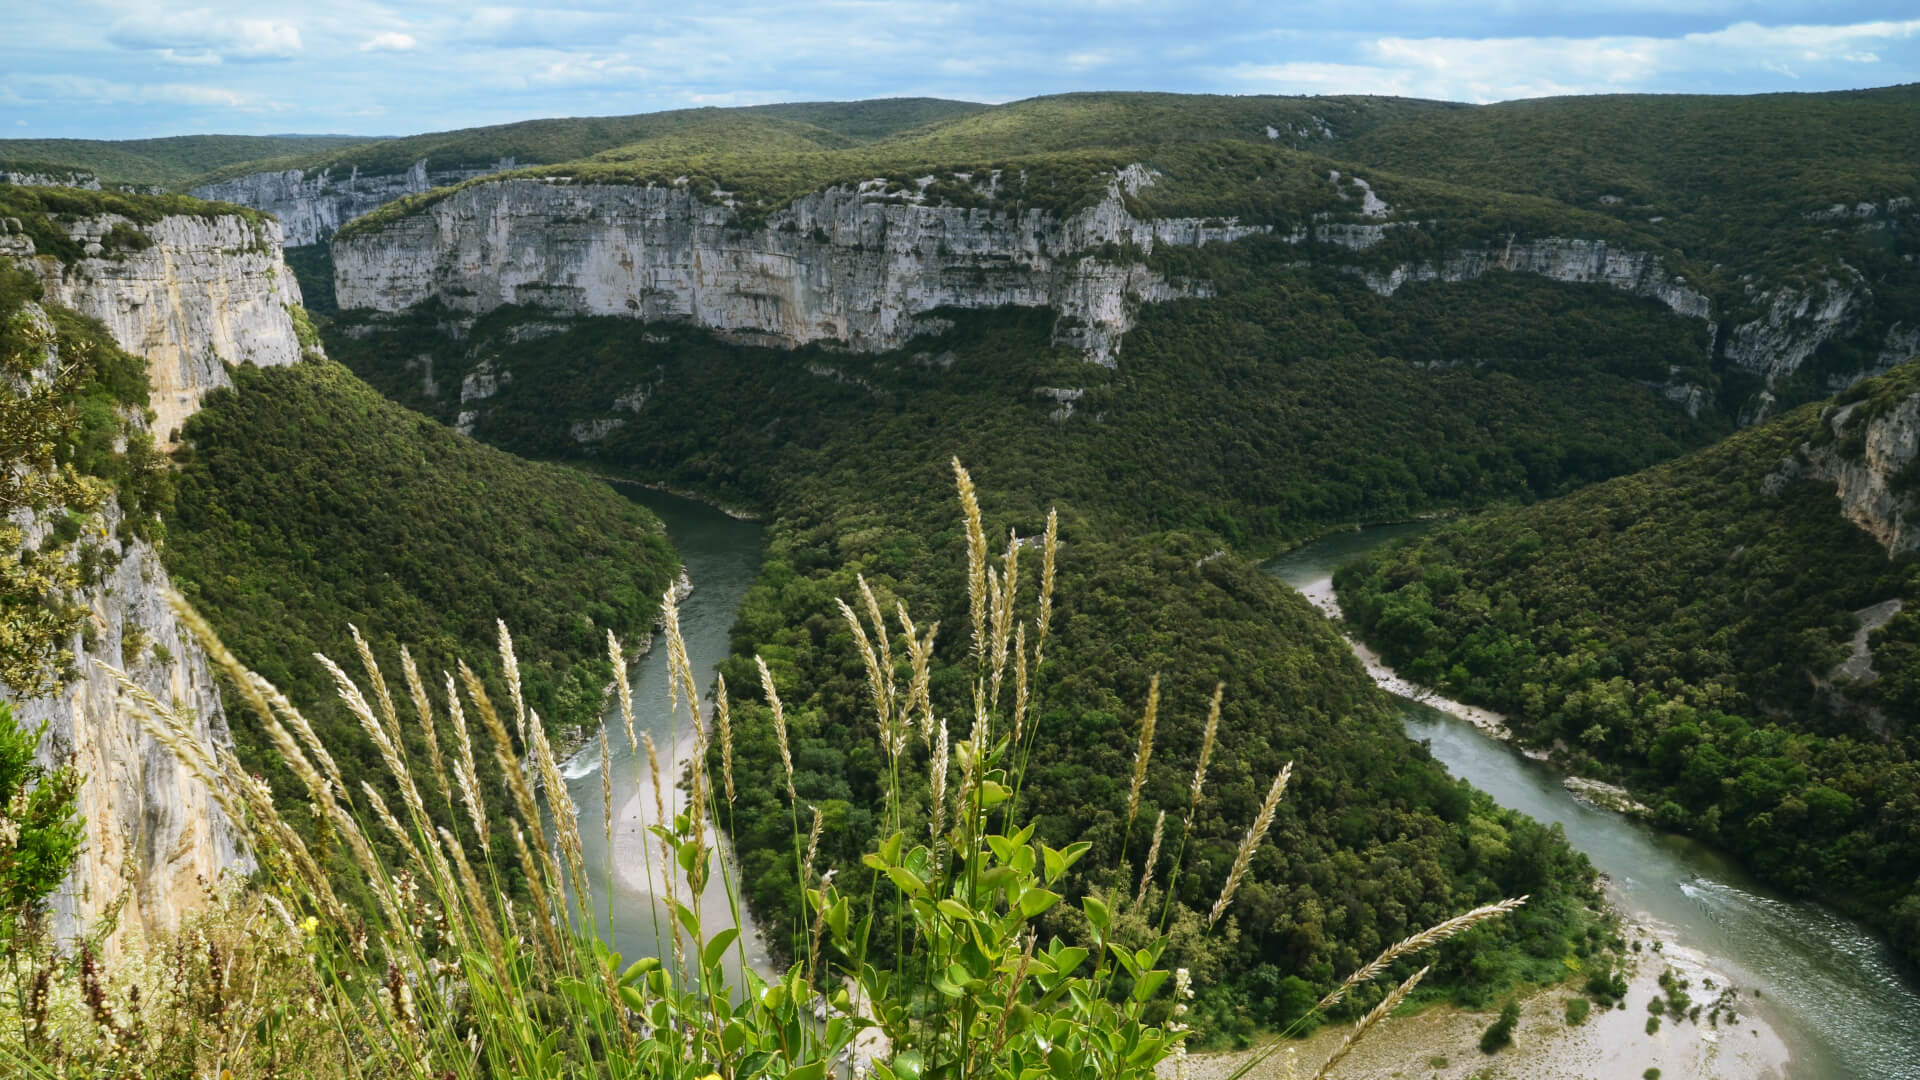 Vacances en Ardèche et Tourisme